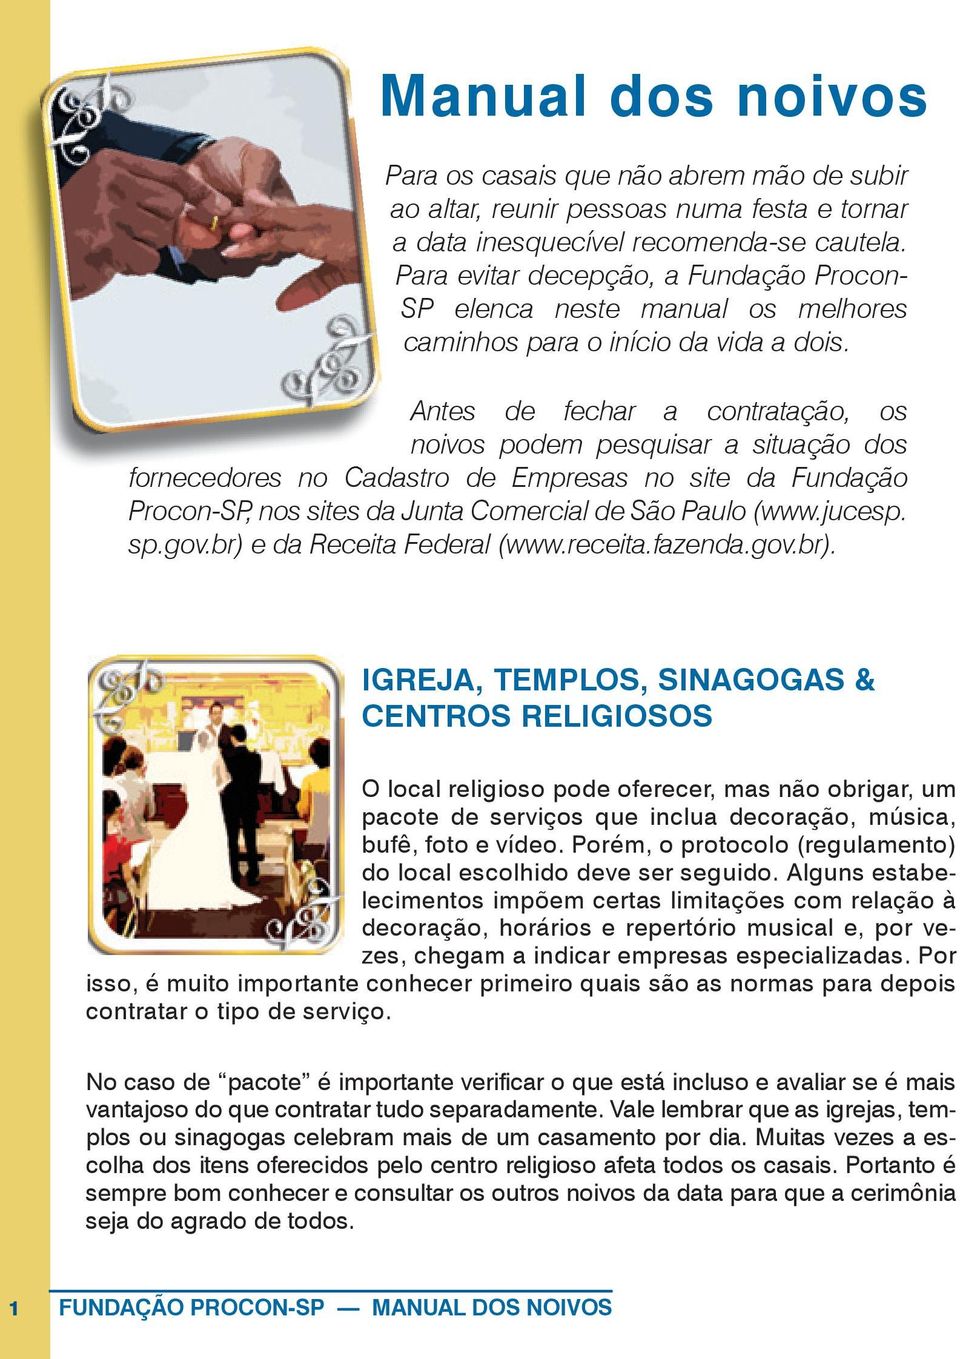 Antes de fechar a contratação, os noivos podem pesquisar a situação dos fornecedores no Cadastro de Empresas no site da Fundação Procon-SP, nos sites da Junta Comercial de São Paulo (www.jucesp. sp.